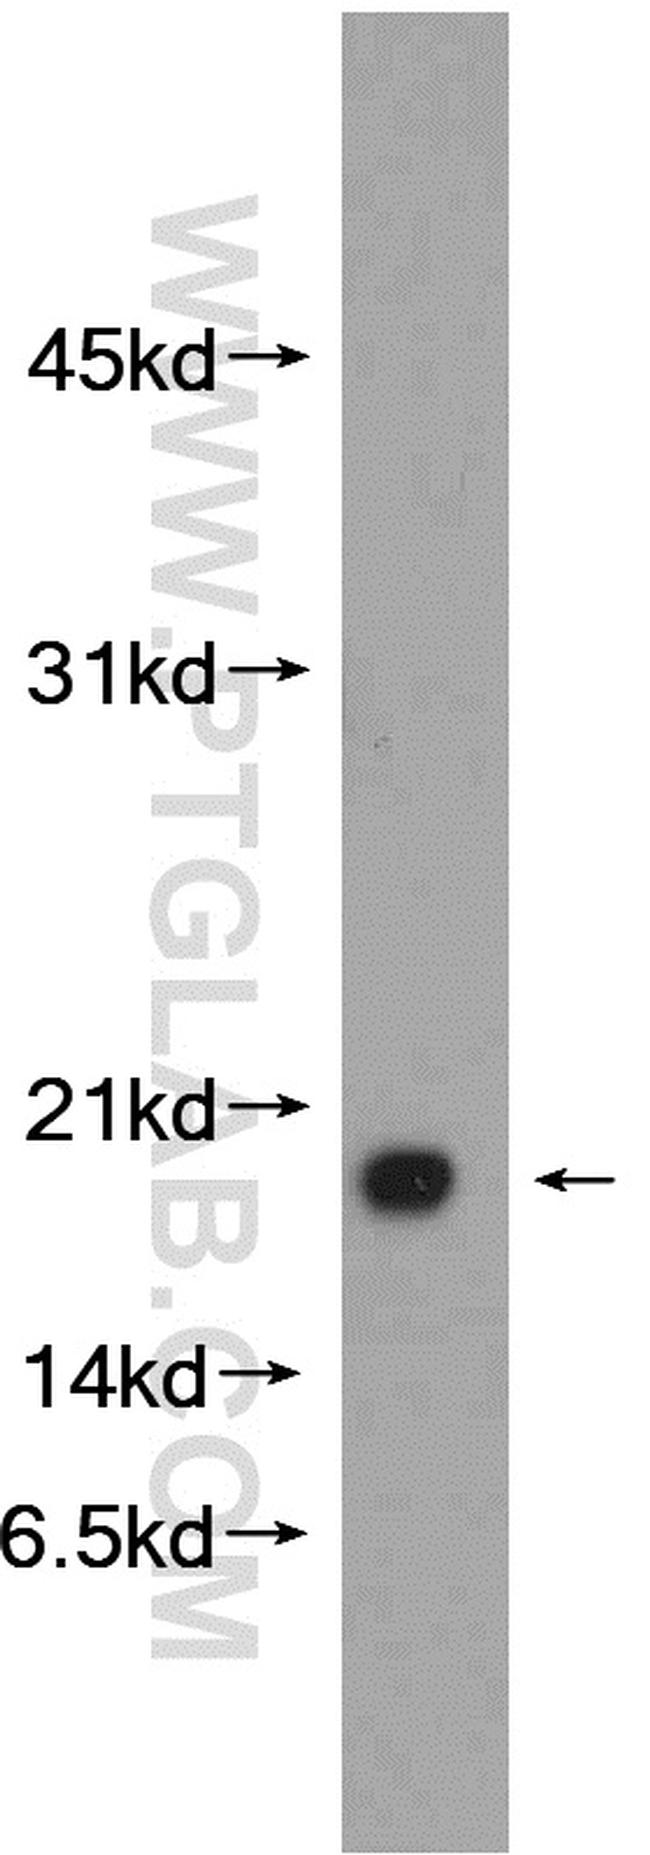 C1orf31 Antibody in Western Blot (WB)